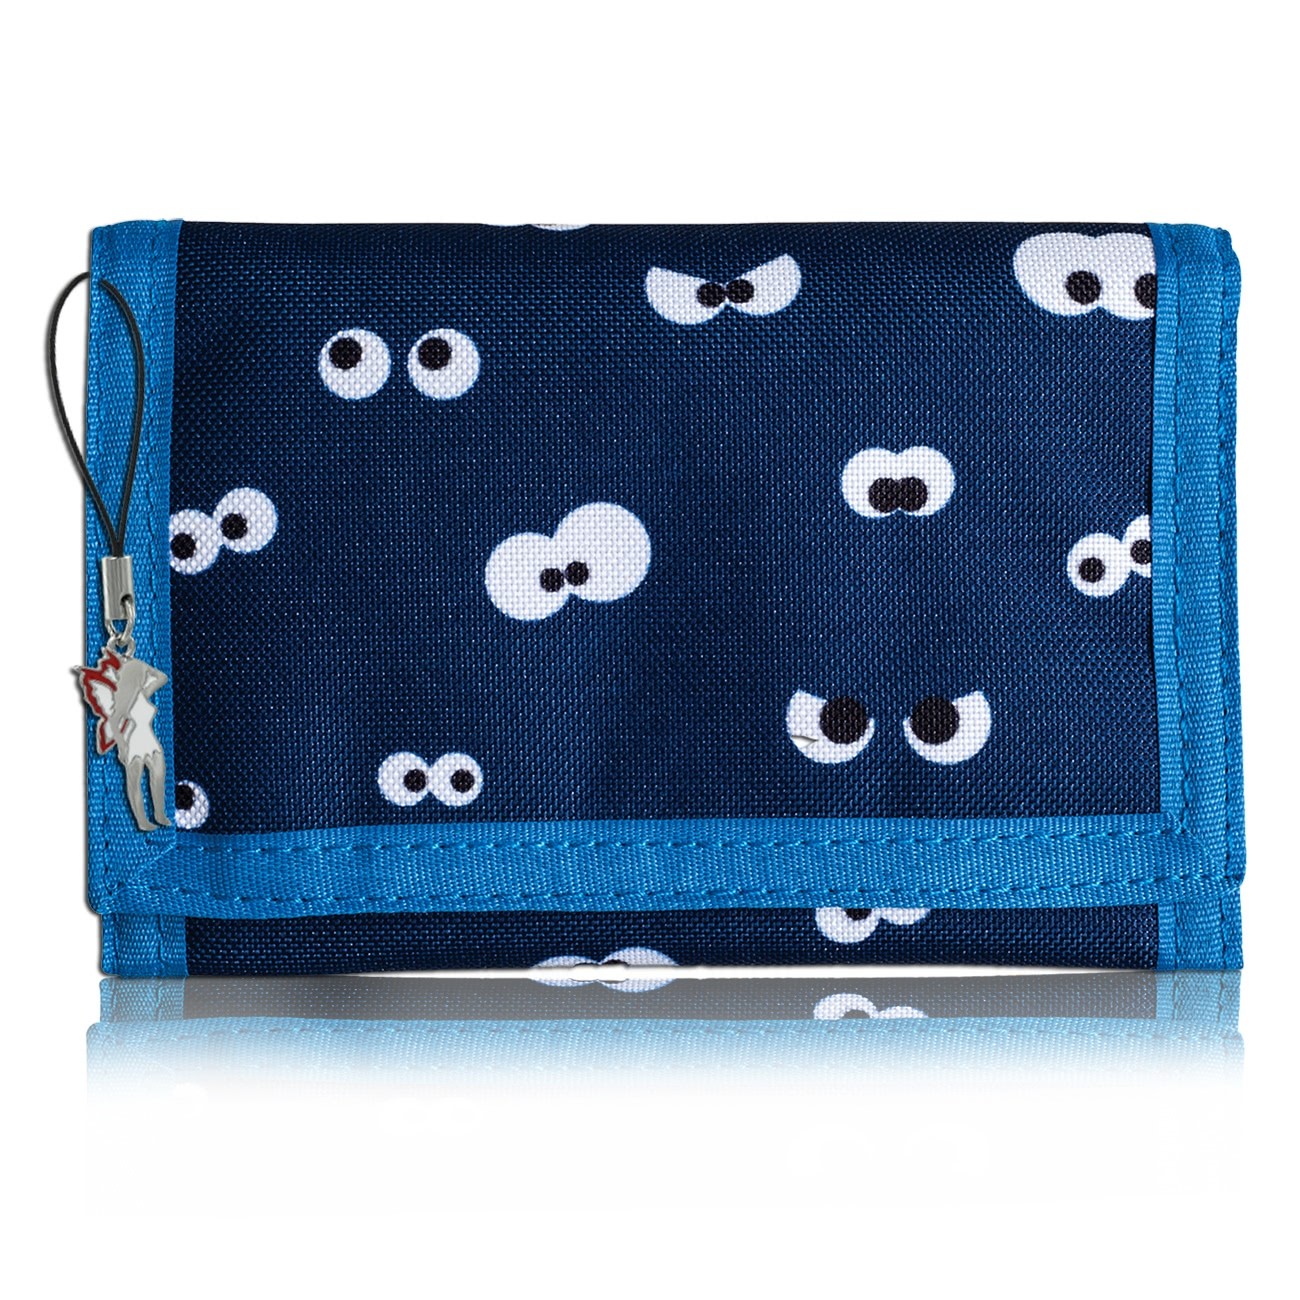 Bestway Kindergeldbörse blau mit lustige Augen Motiv Polyester OPI100B